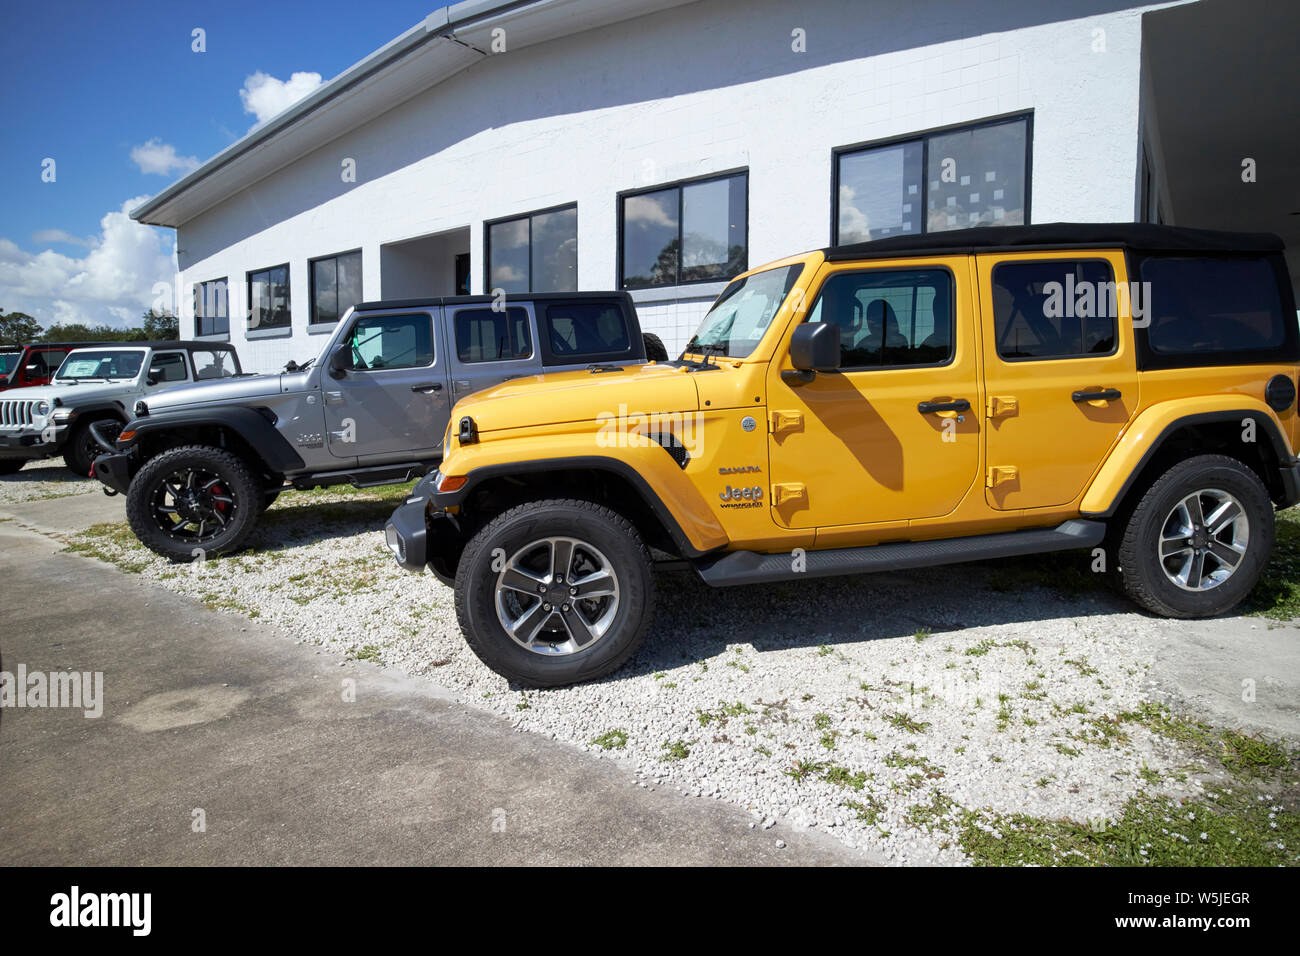 Neue Jeep Wrangler suvs für Verkauf Fahrzeuge auf einem Auto Sales viel in Florida USA Vereinigte Staaten von Amerika Stockfoto